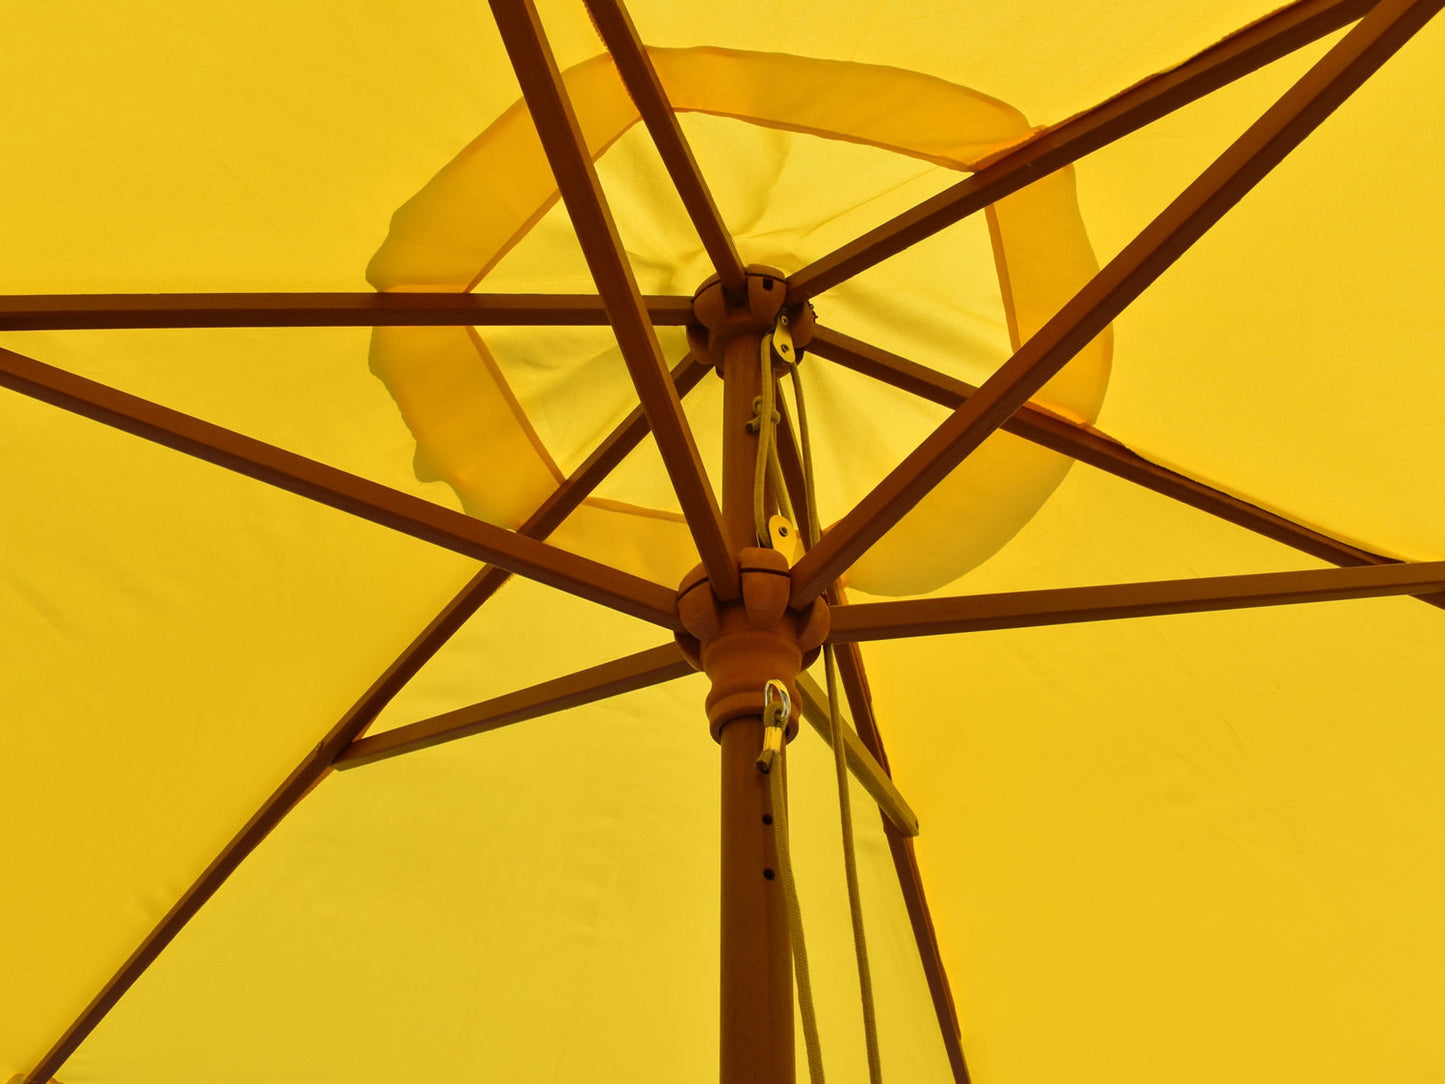 2.5 Parasol underside struts Yellow